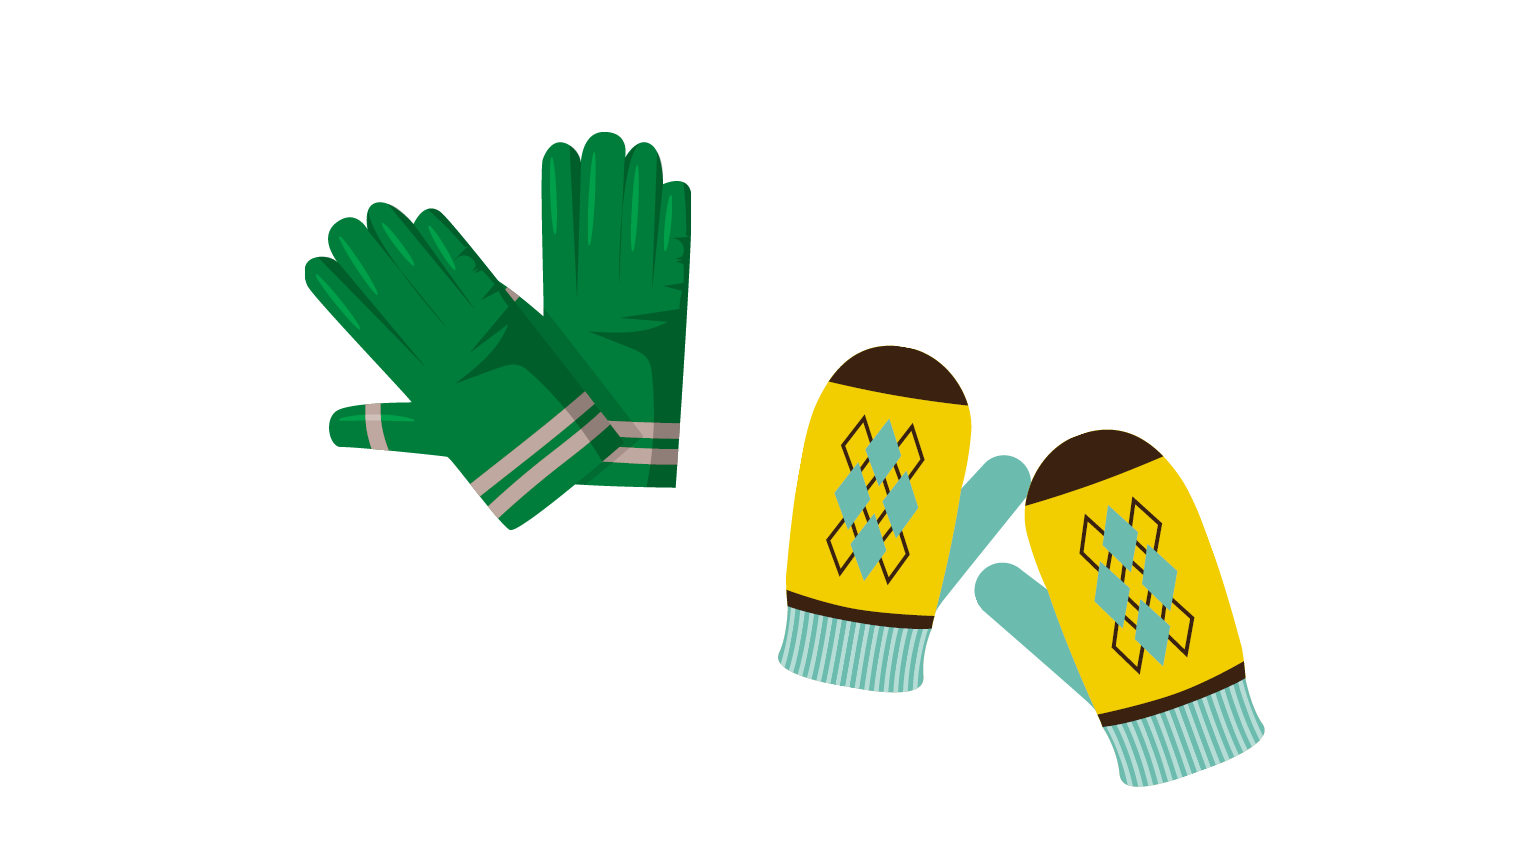 Gloves/Mittens